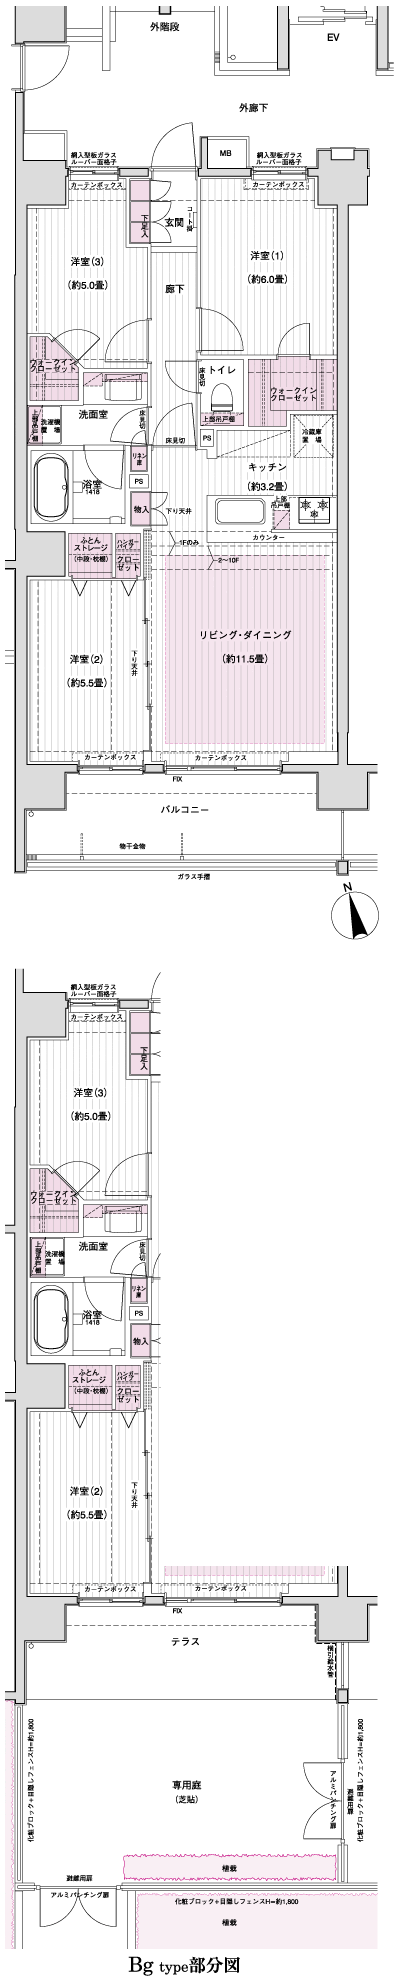 Floor: 3LDK + 2WIC, occupied area: 70.11 sq m